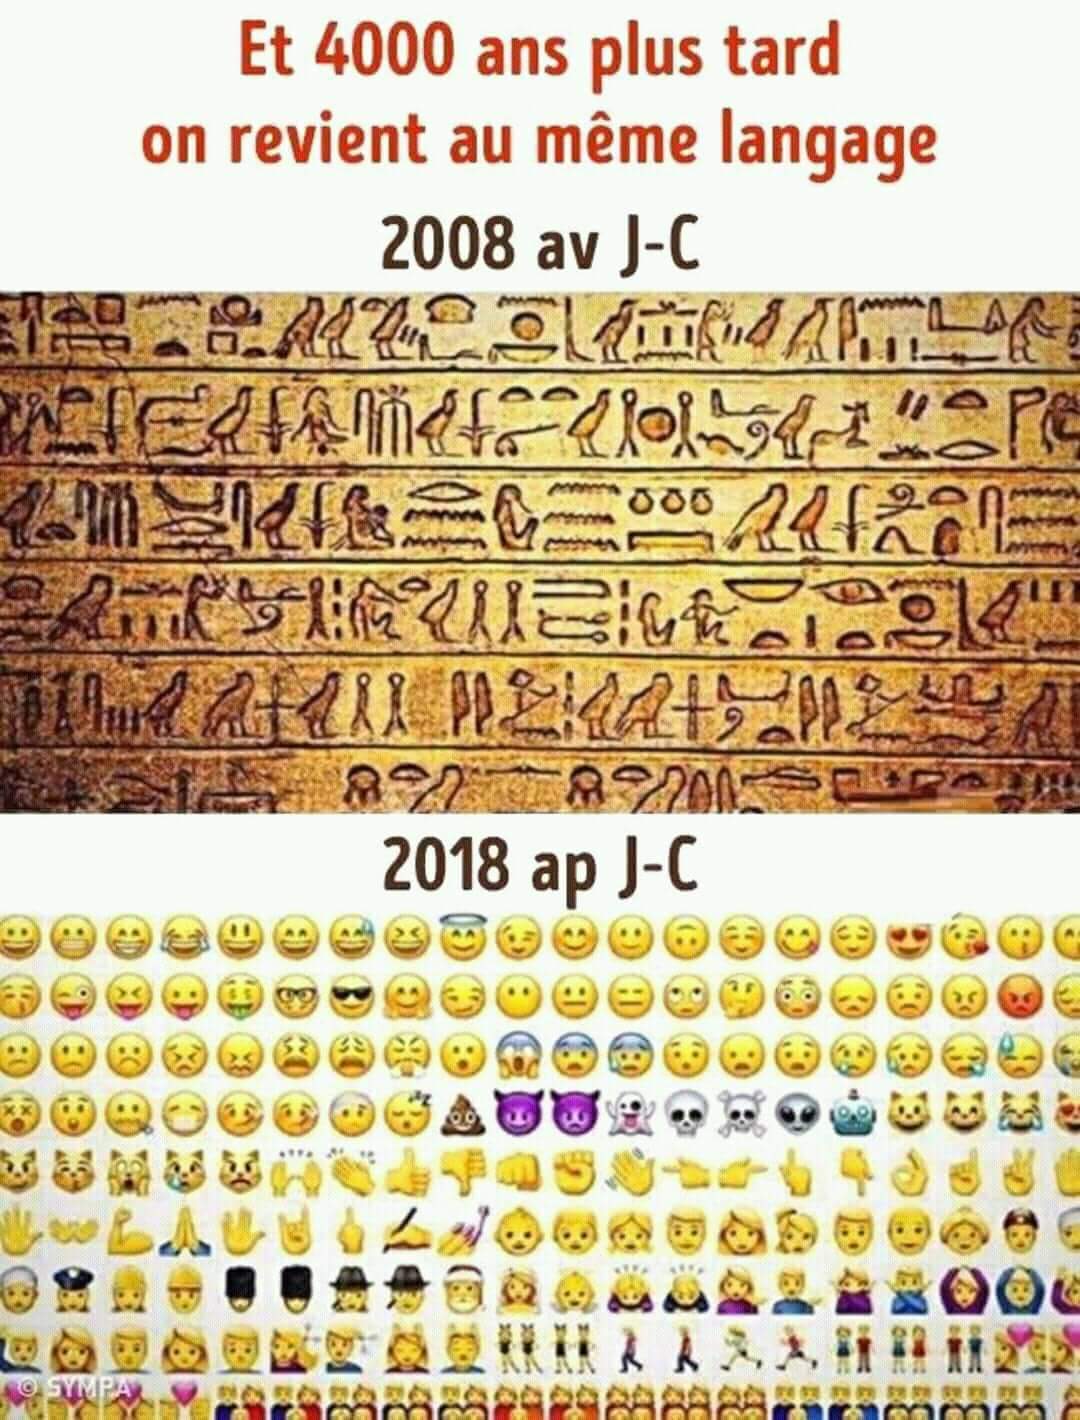 Et 4000 ans plus tard on revient au même langage.